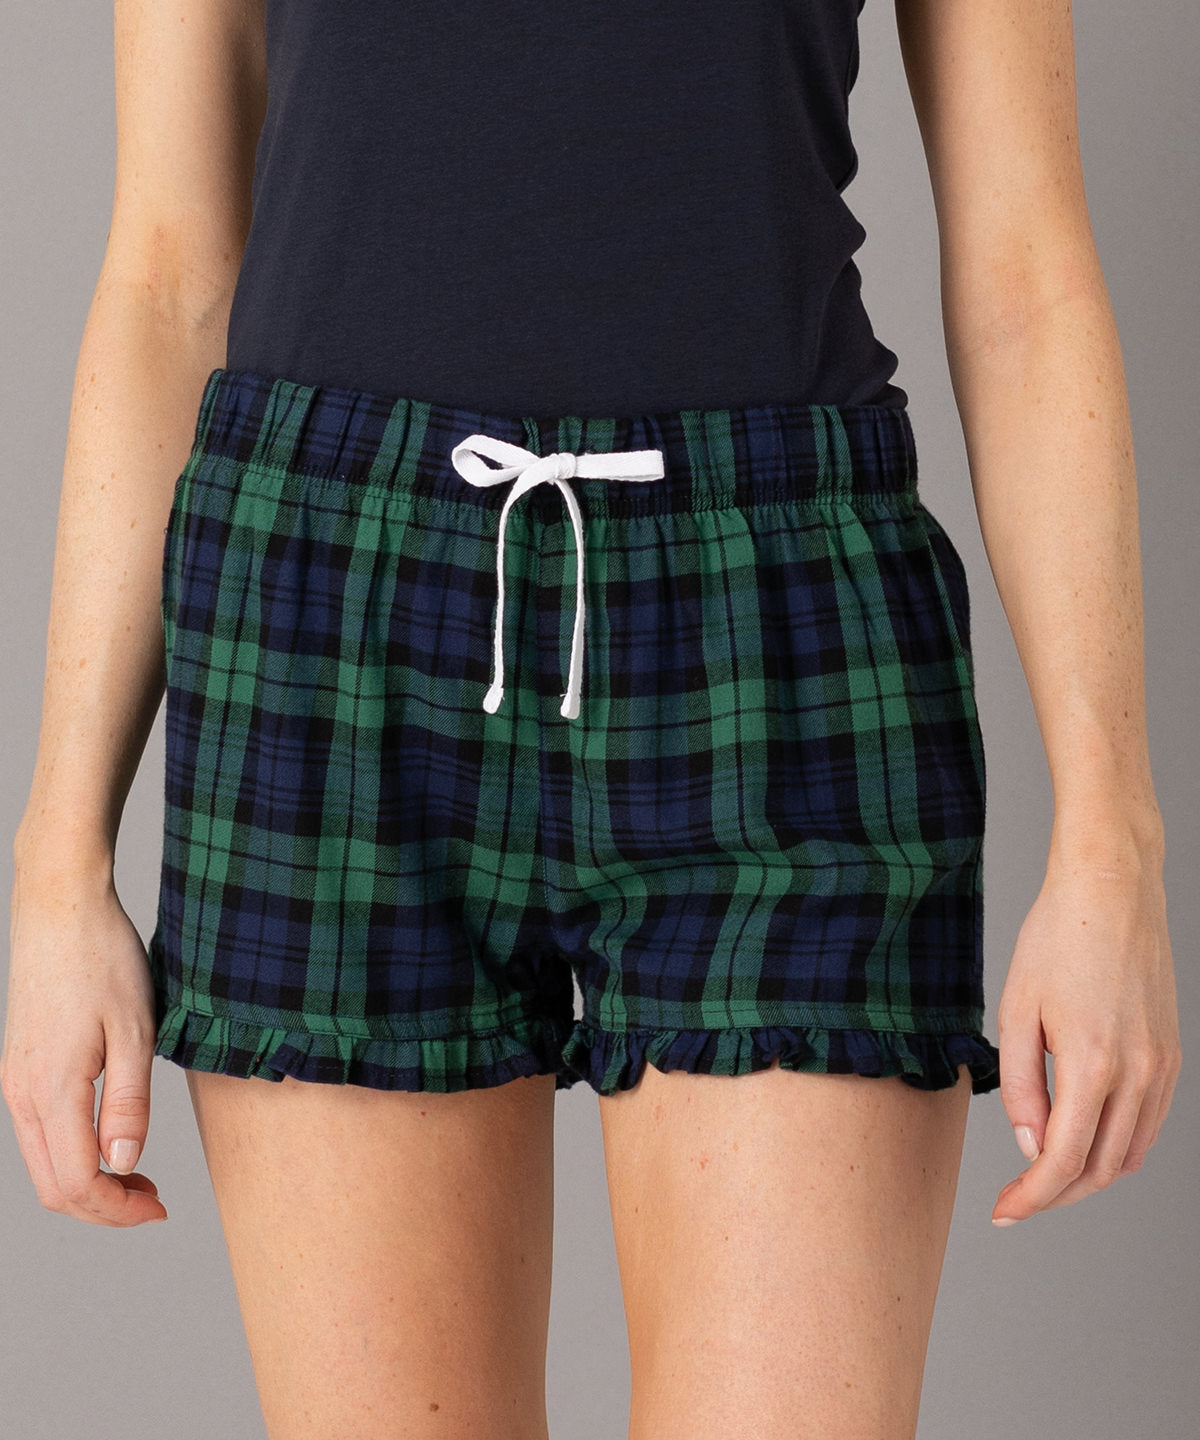 Stuttbuxur - Women's Tartan Frill Shorts